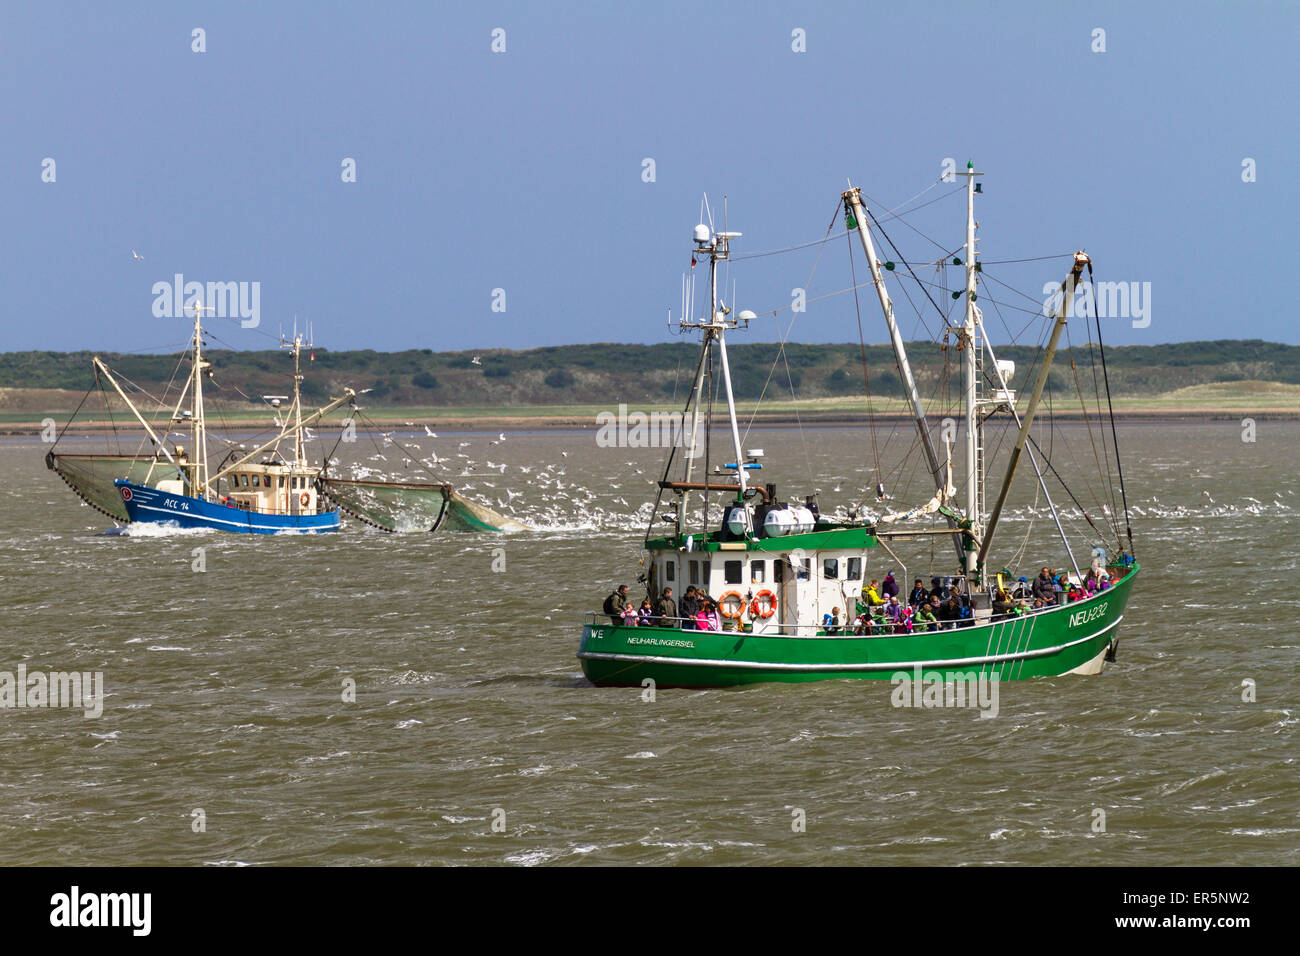 Les bateaux de pêche au large de l'île de Langeoog, Mer du Nord, îles de la Frise orientale, Frise orientale, Basse-Saxe, Allemagne, Europe Banque D'Images